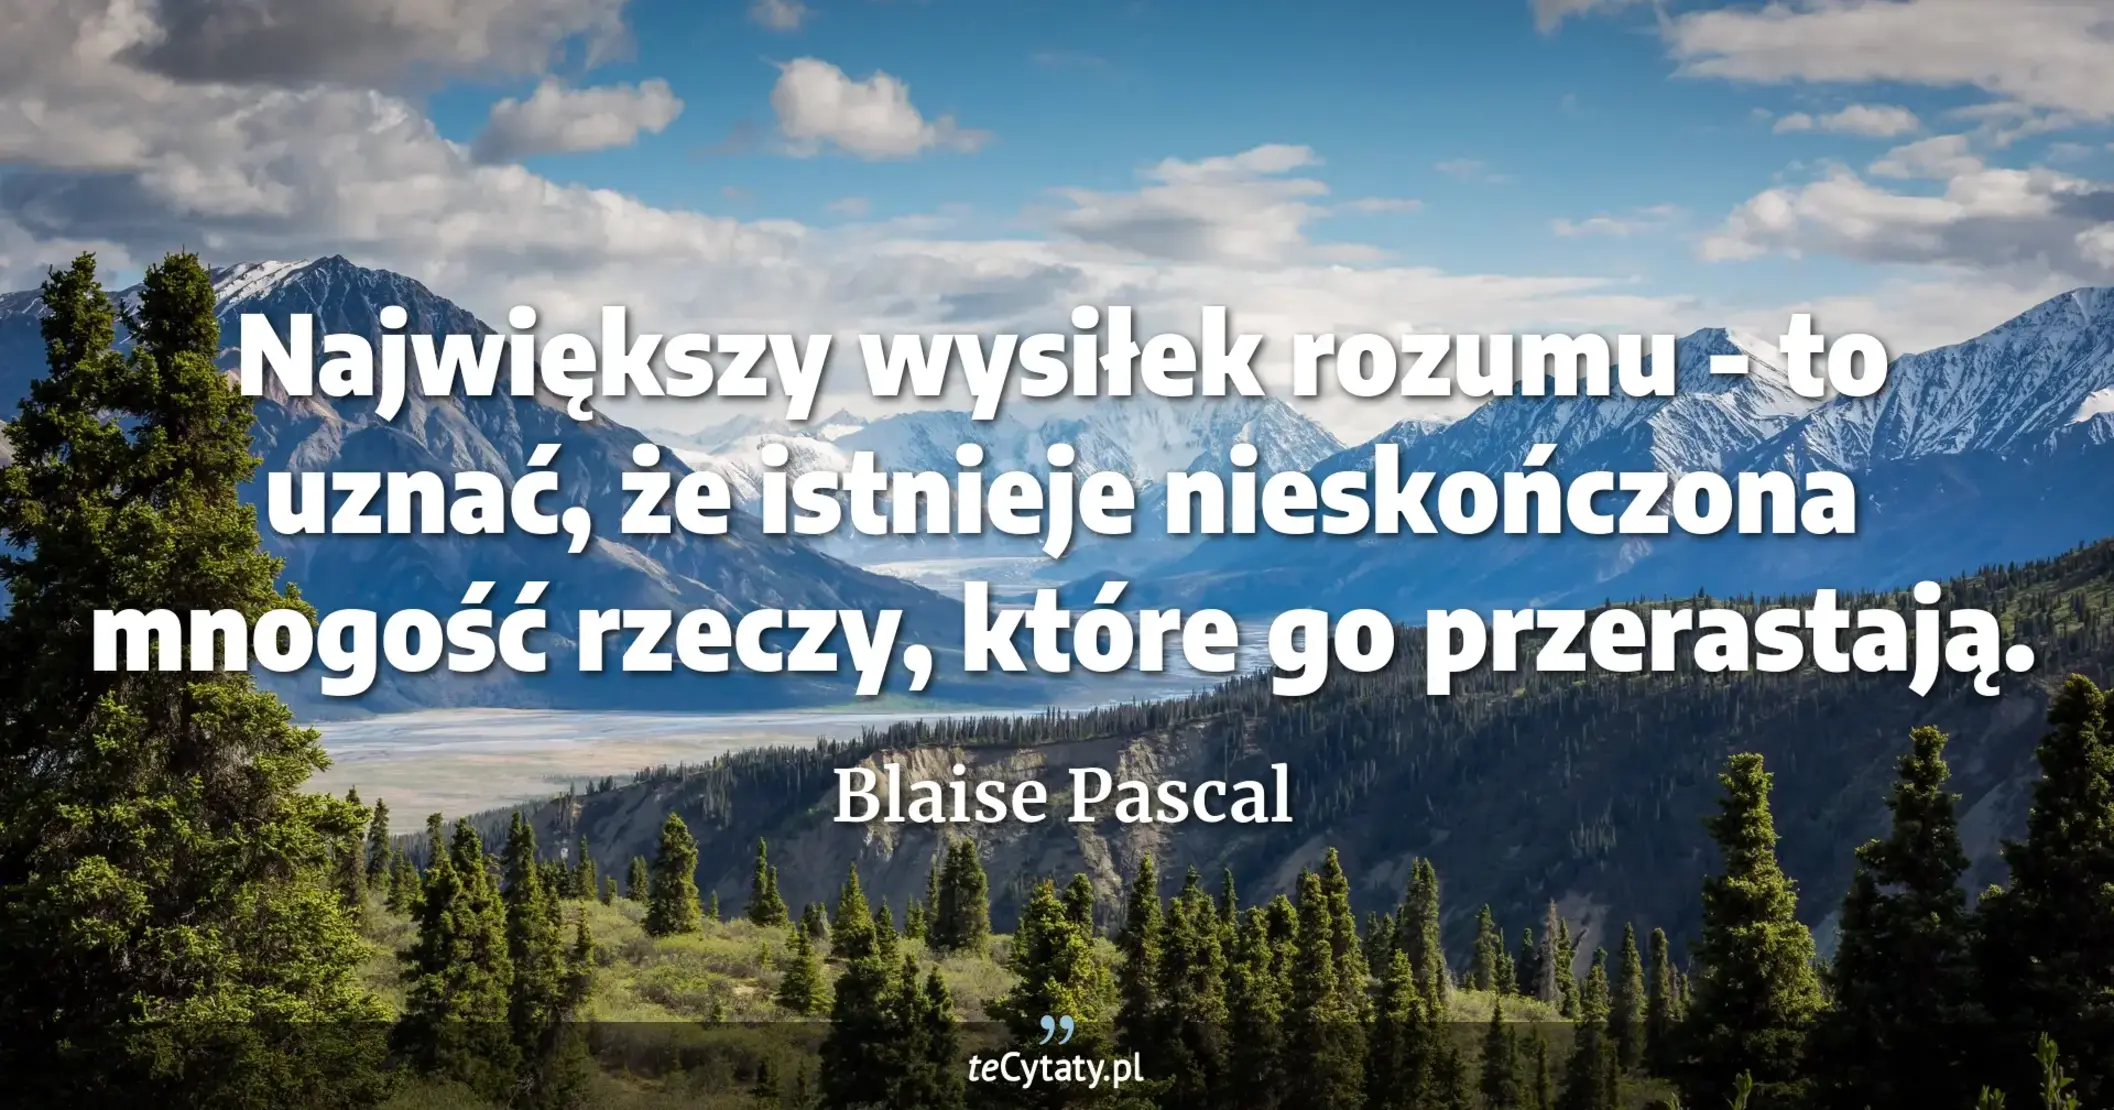 Największy wysiłek rozumu - to uznać, że istnieje nieskończona mnogość rzeczy, które go przerastają. - Blaise Pascal